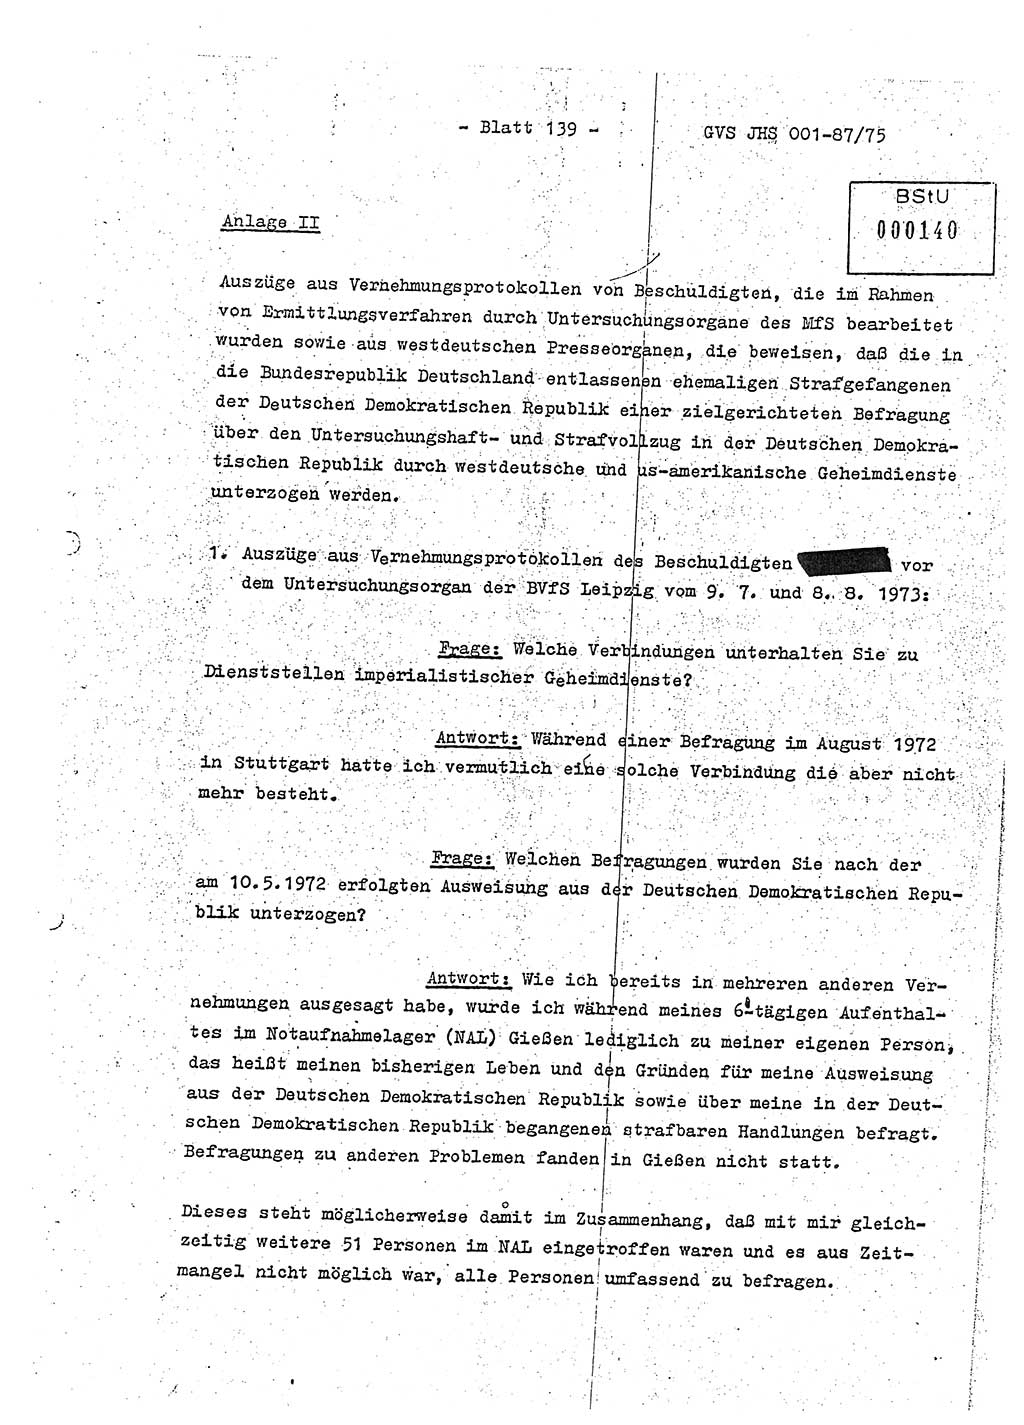 Diplomarbeit Hauptmann Volkmar Heinz (Abt. ⅩⅣ), Oberleutnant Lothar Rüdiger (BV Lpz. Abt. Ⅺ), Ministerium für Staatssicherheit (MfS) [Deutsche Demokratische Republik (DDR)], Juristische Hochschule (JHS), Geheime Verschlußsache (GVS) o001-87/75, Potsdam 1975, Seite 139 (Dipl.-Arb. MfS DDR JHS GVS o001-87/75 1975, S. 139)